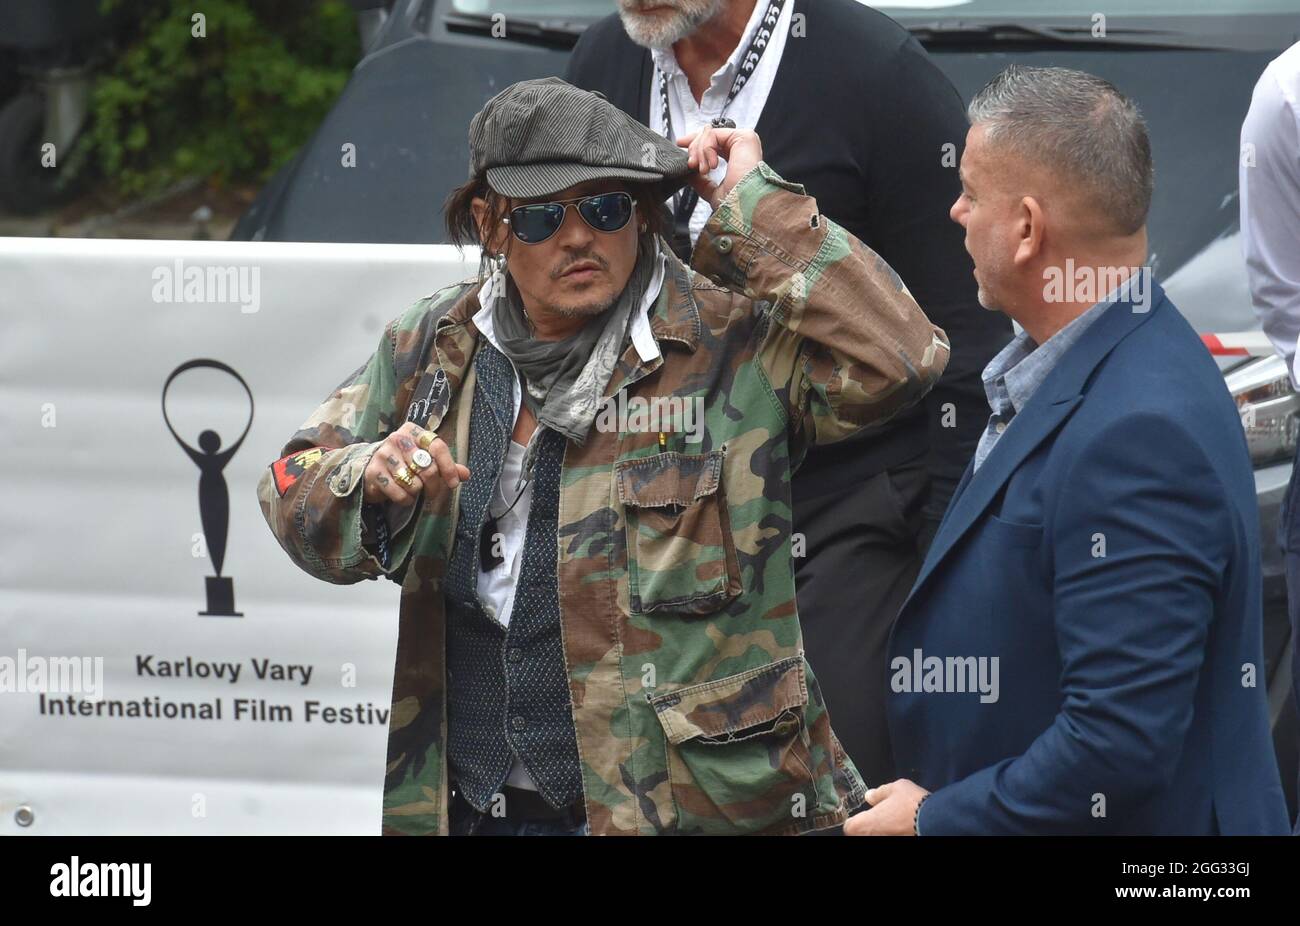 Karlovy Vary, République tchèque. 28 août 2021. L'acteur américain Johnny Depp, à gauche, vient à une présentation du film Minamata au 55e Festival international du film de Karlovy Vary (KVIFF), le 28 août 2021, à Karlovy Vary, République tchèque. Crédit: Slavomir Kubes/CTK photo/Alamy Live News Banque D'Images